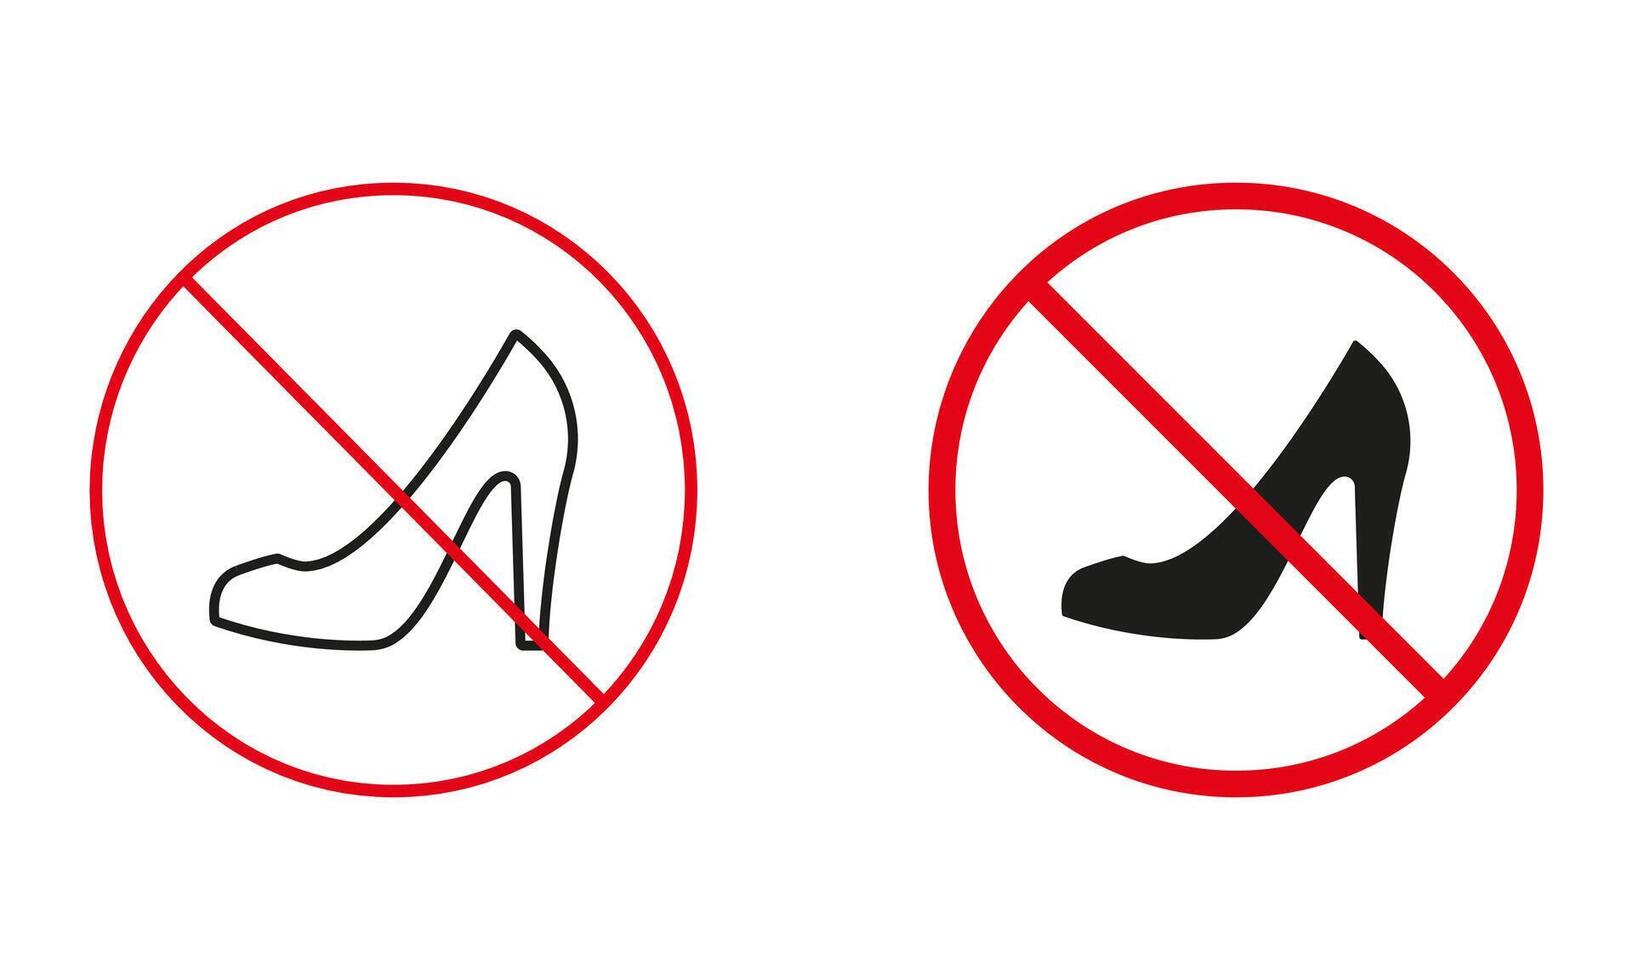 alto tacchi non permesso, femmina paio scarpe avvertimento cartello impostare. donne scarpa vietare, elegante calzature linea e silhouette icone. classico stiletto proibito simbolo. isolato vettore illustrazione